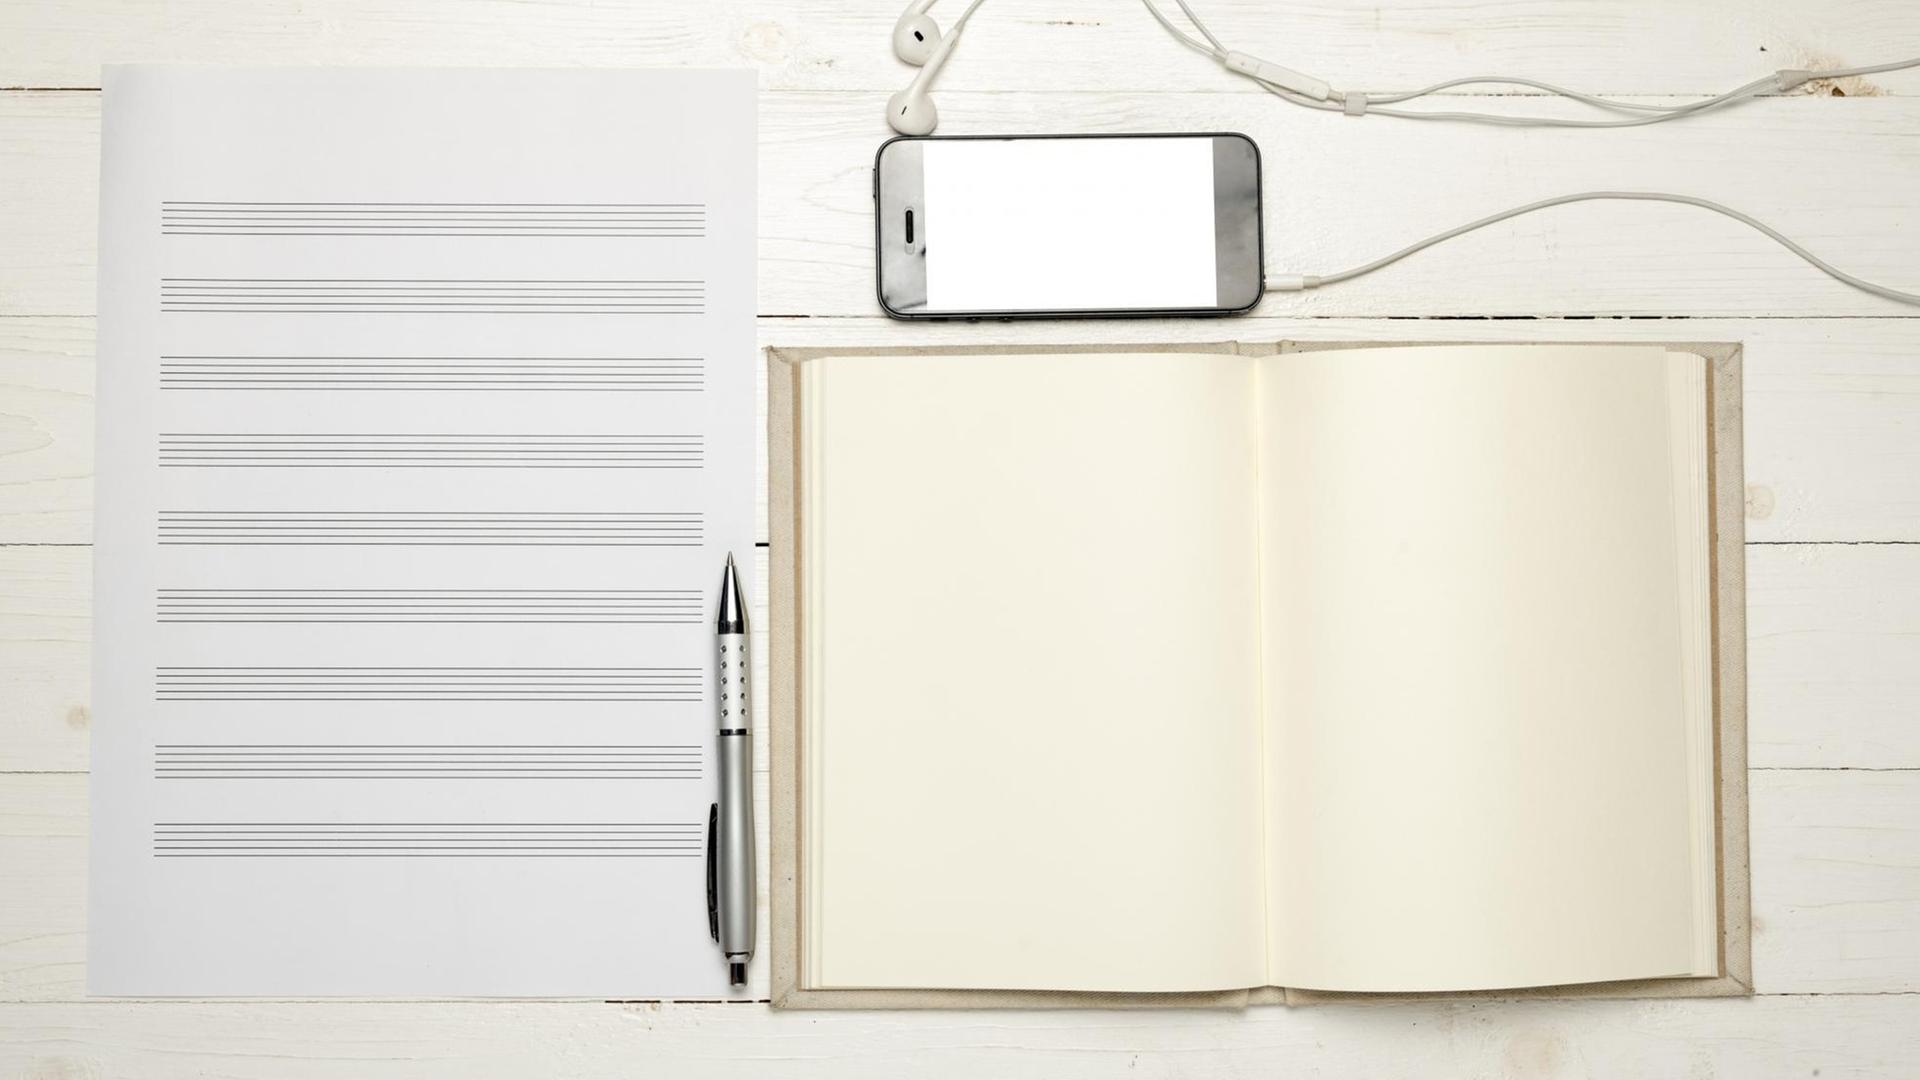 Leeres Notenpapier liegt auf einem hellen Holztisch. Daneben liegen ein Kugelschreiben, ein leeres Notizbuch und ein Smartphone mit Kopfhörern.